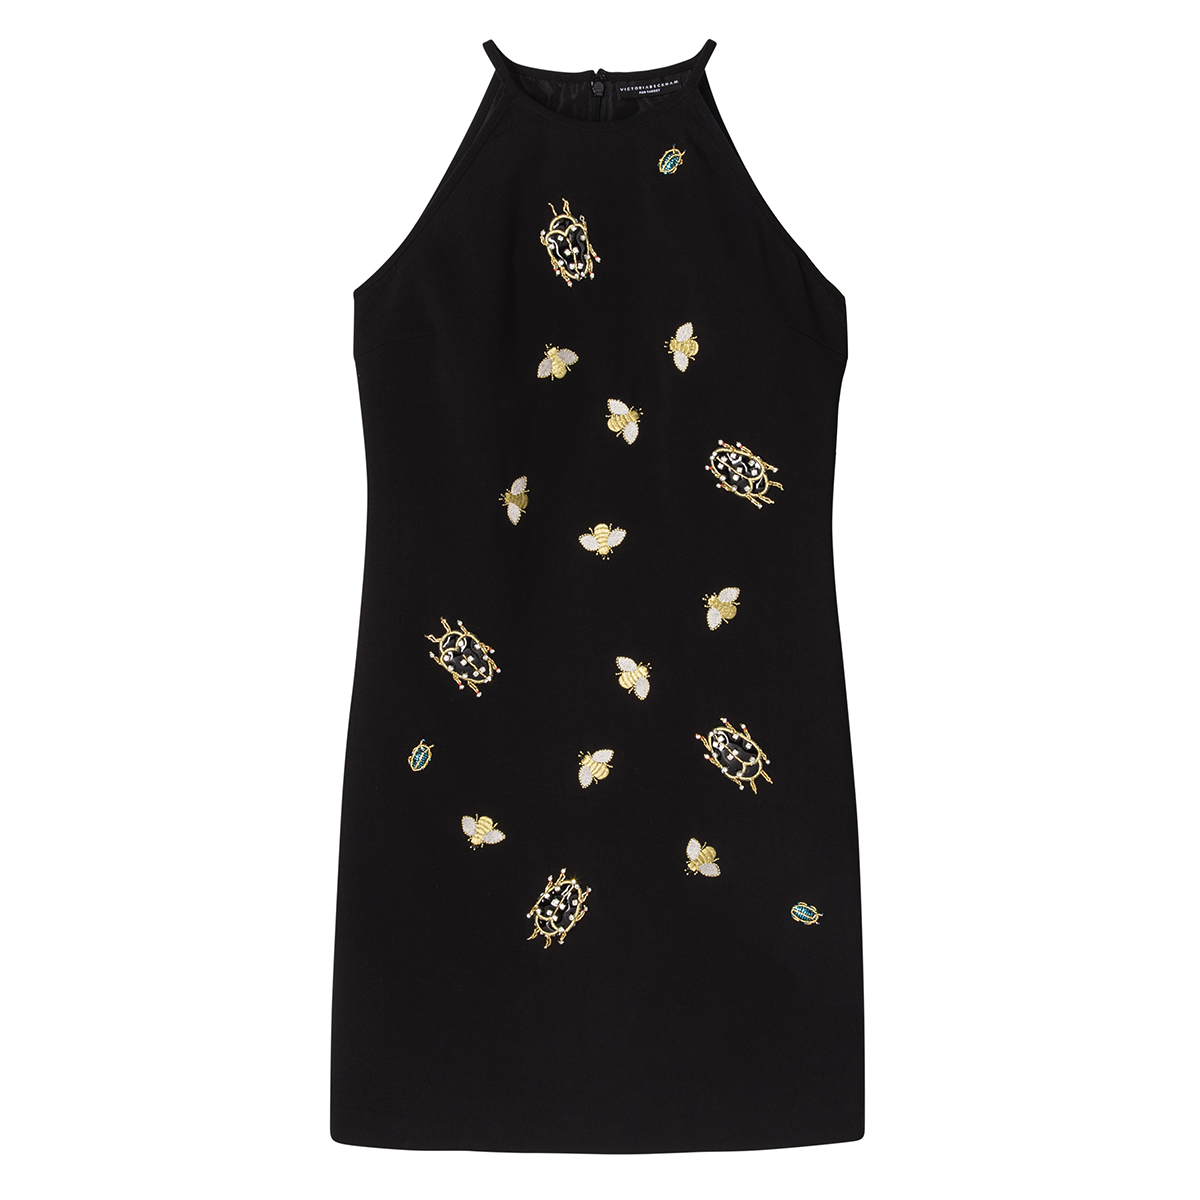 Black Embellished Bug Dress, $60